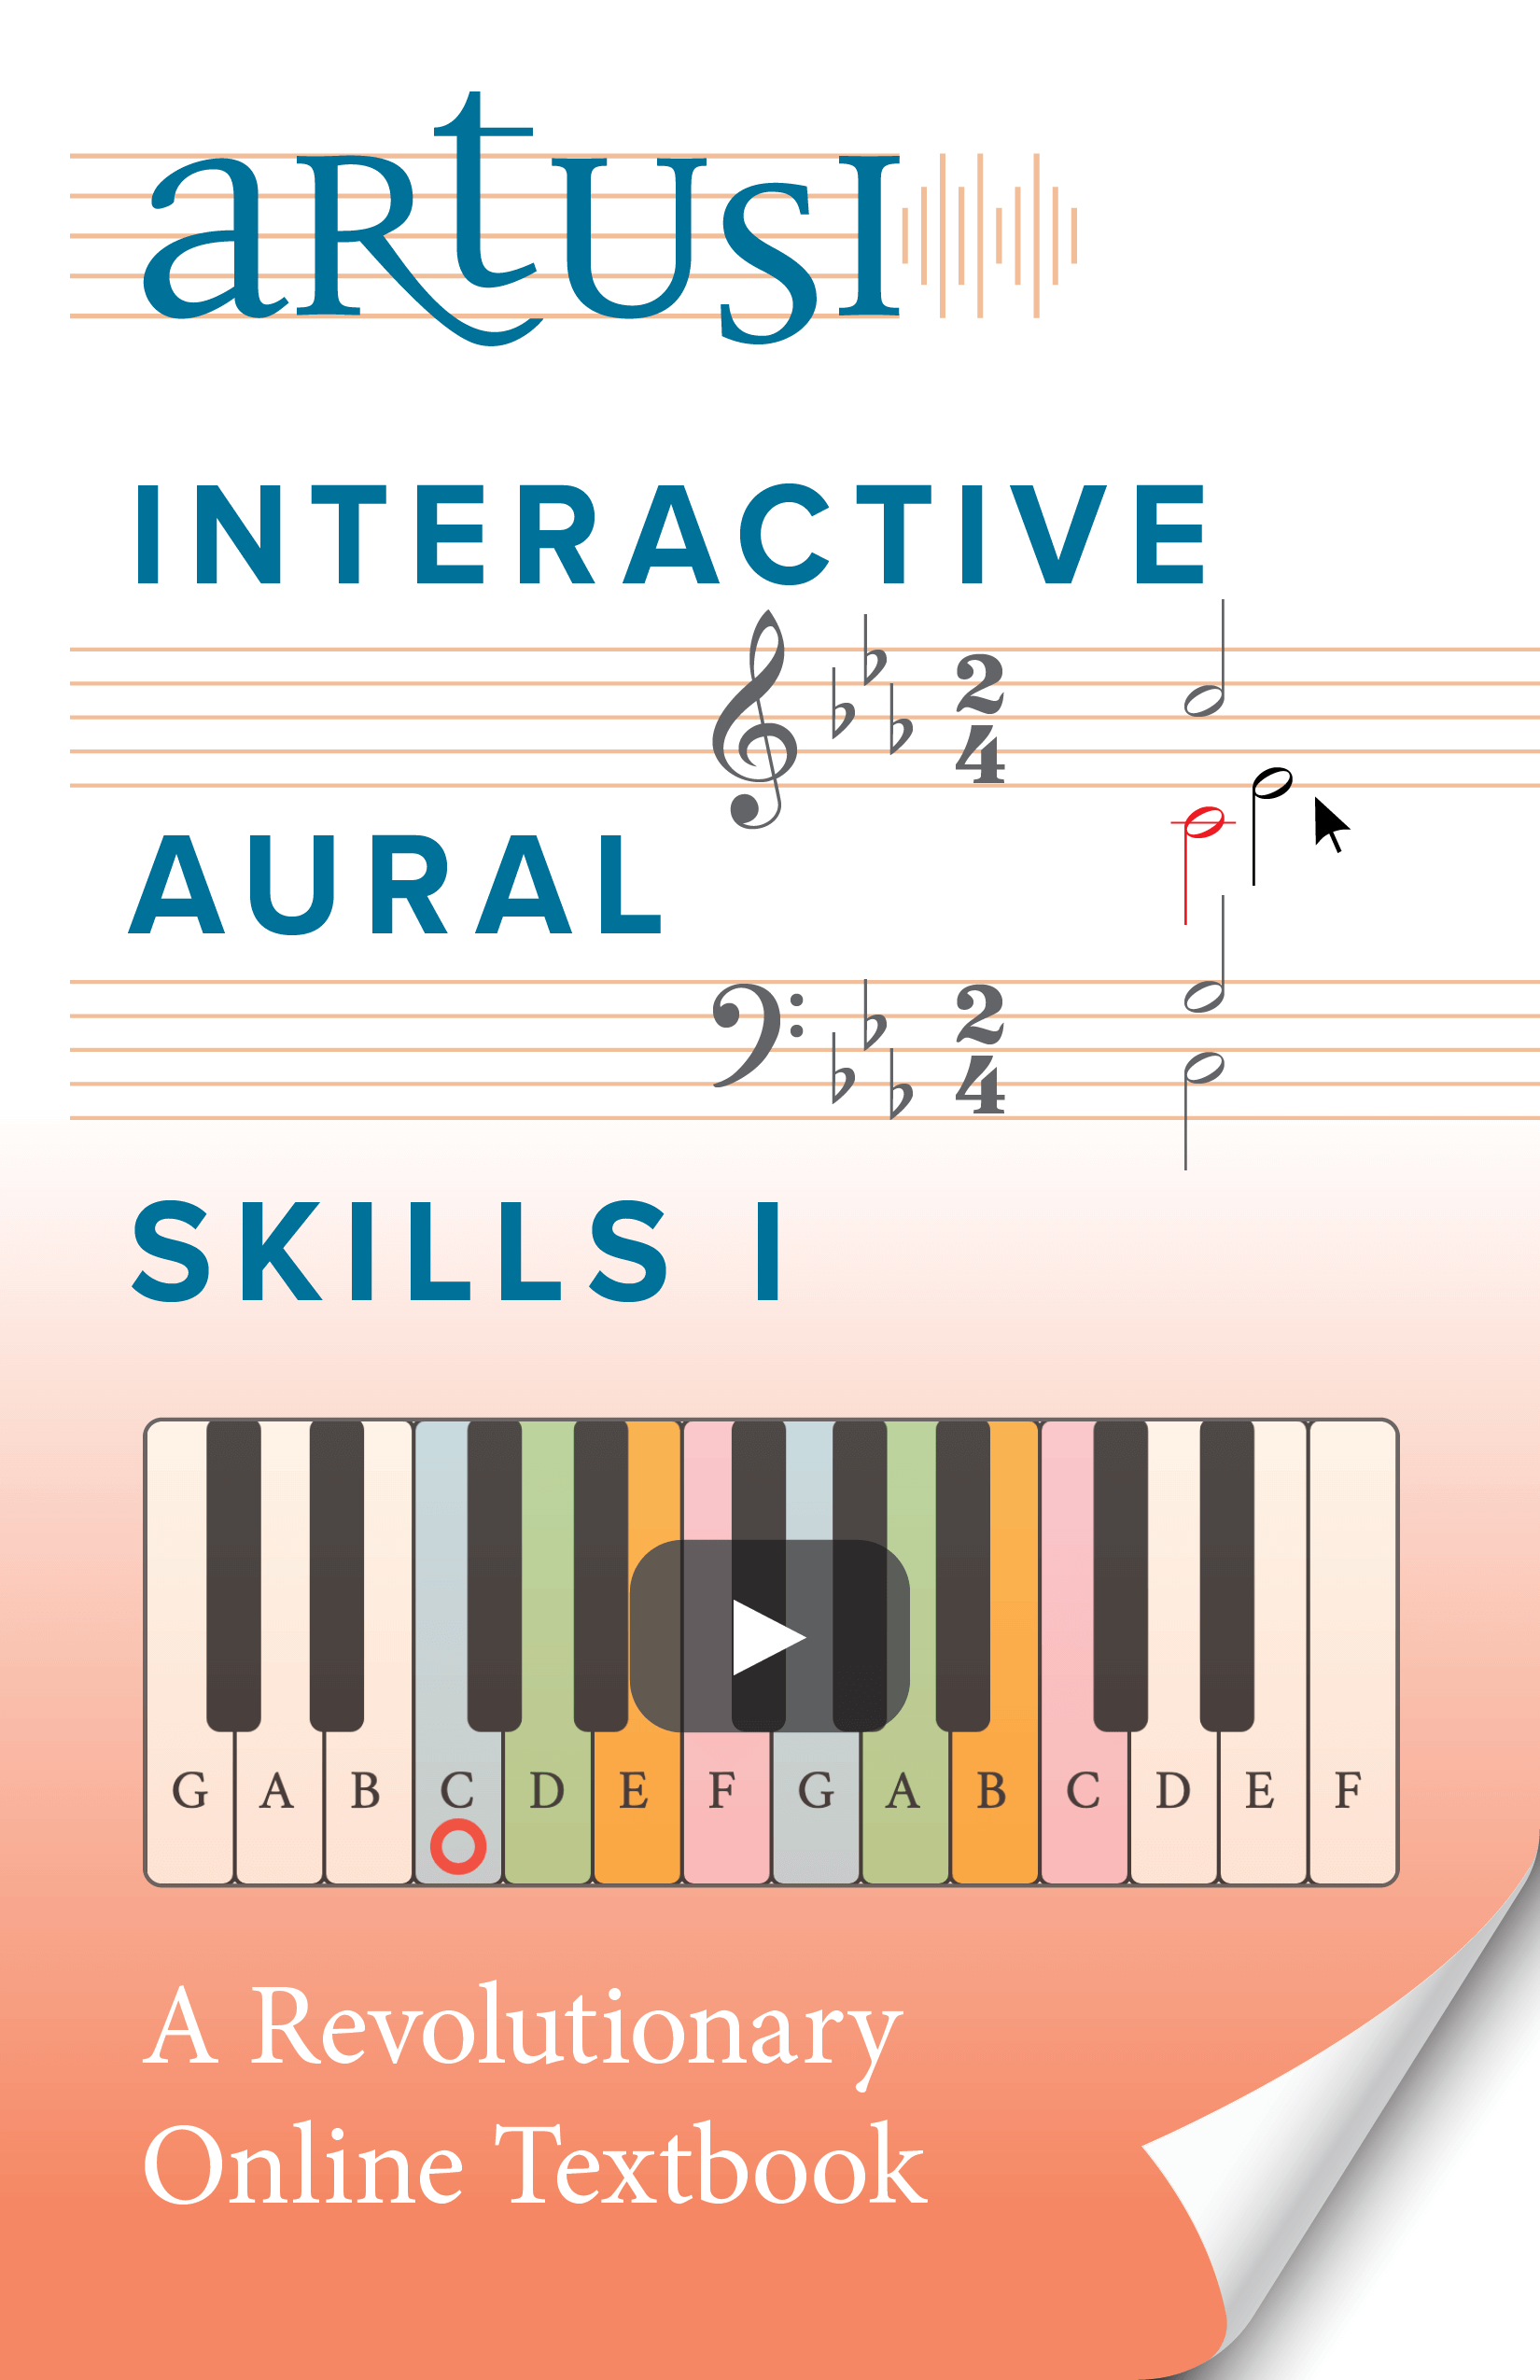 music aural training